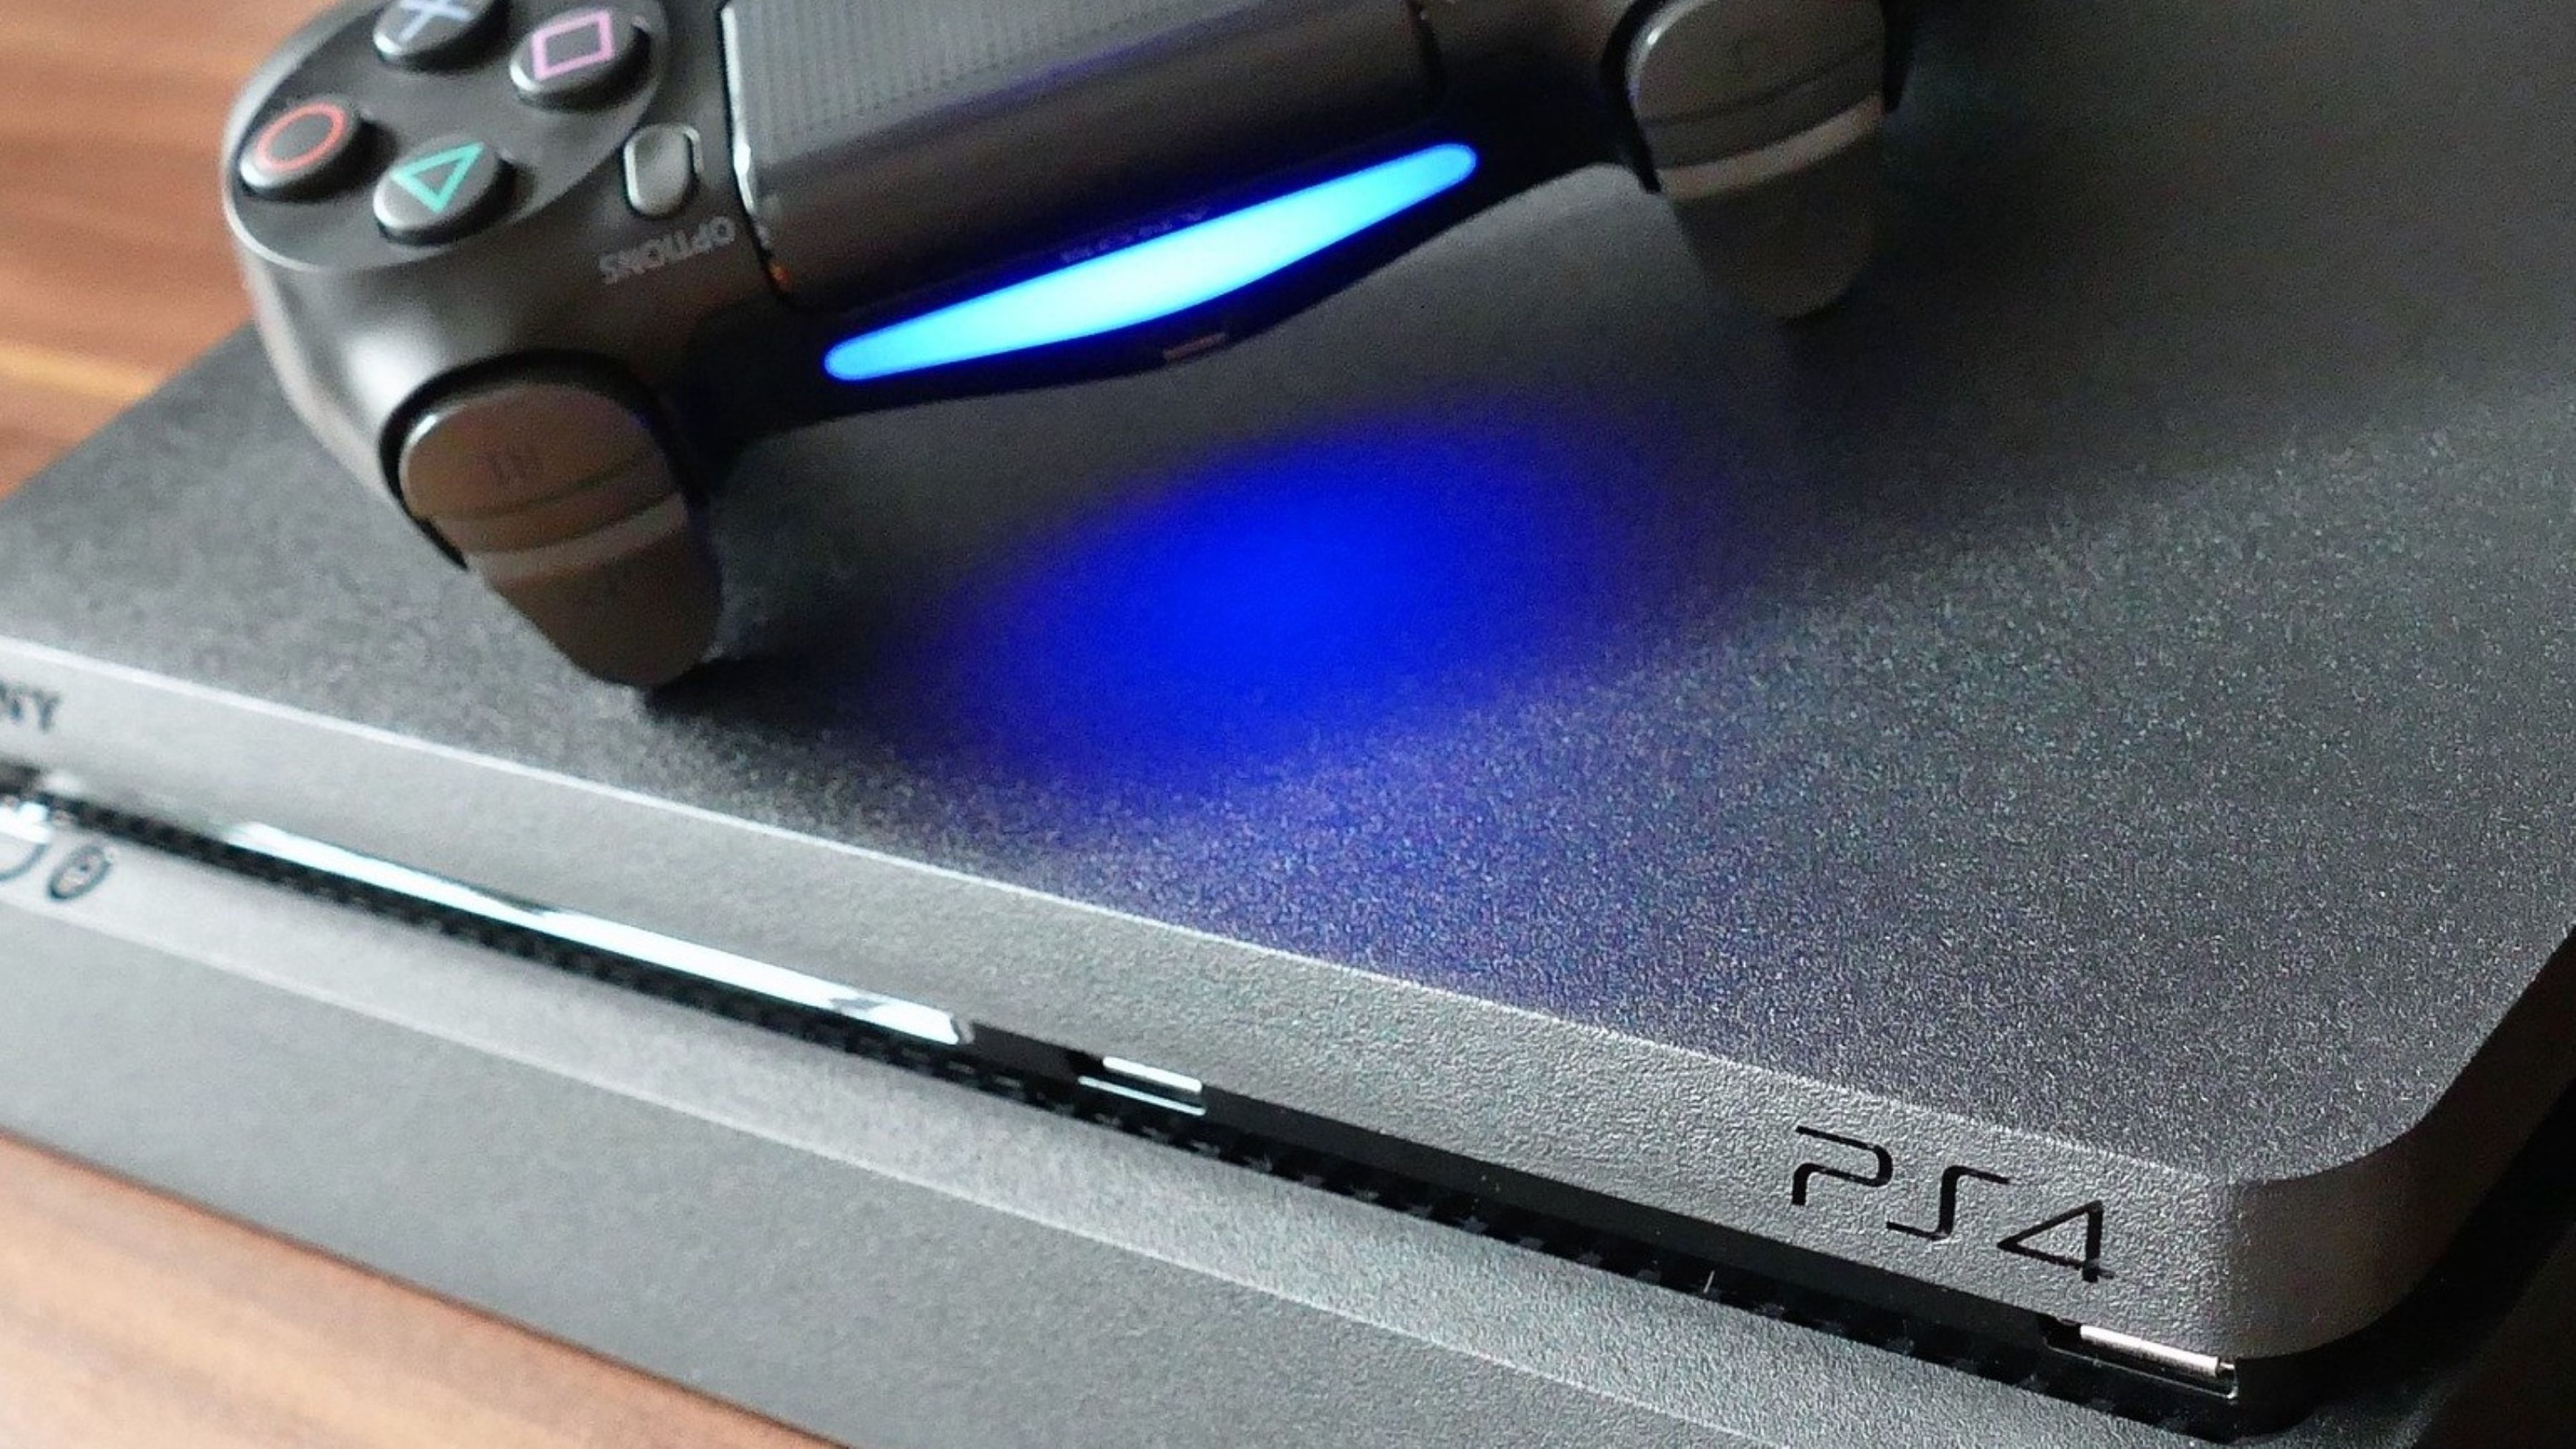 PlayStation 4 - PS4